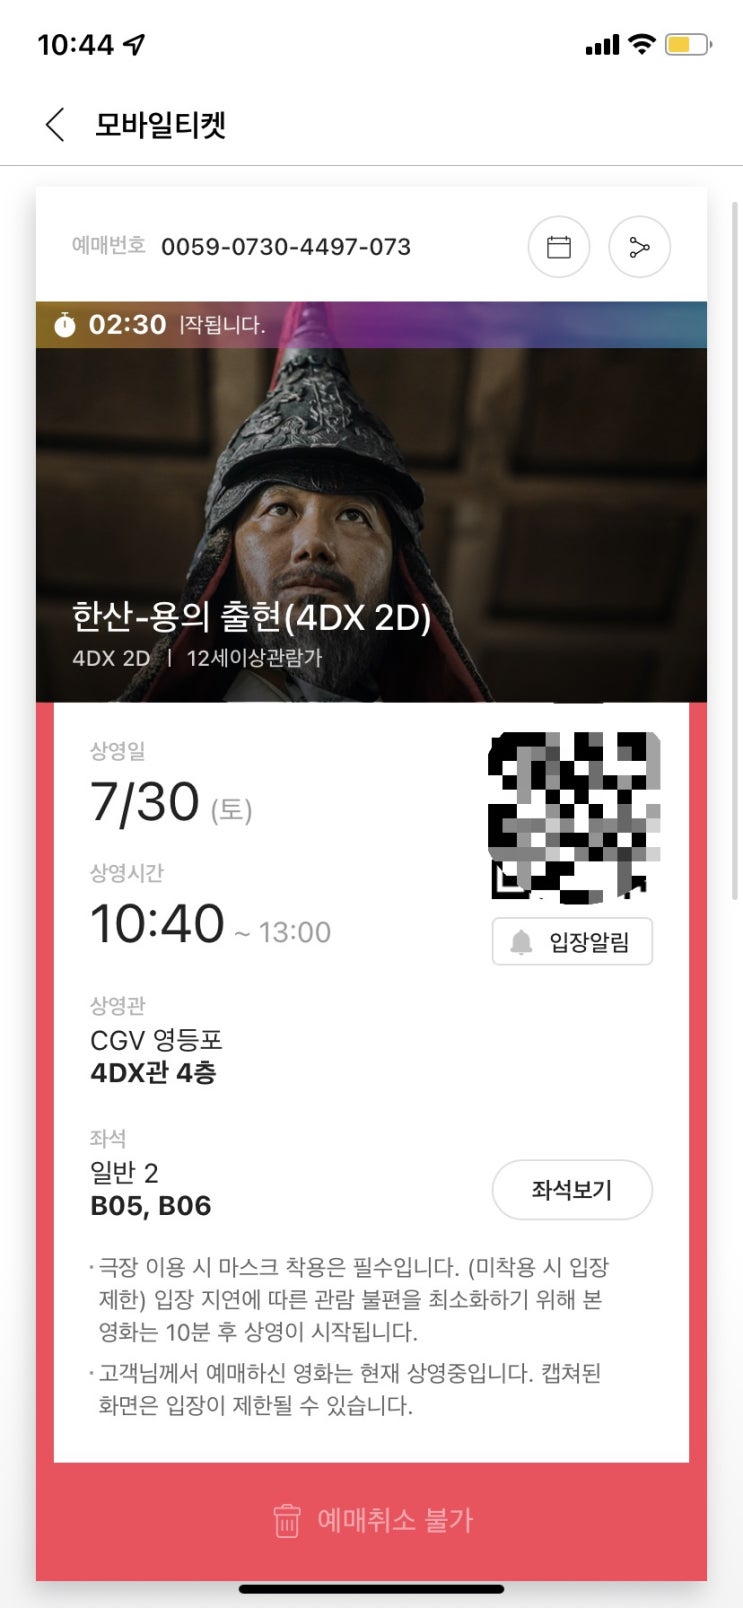 영화 한산 영등포 CGV 4DX 후기 - feat. 국뽕 충전하는데 이만한게 없네요